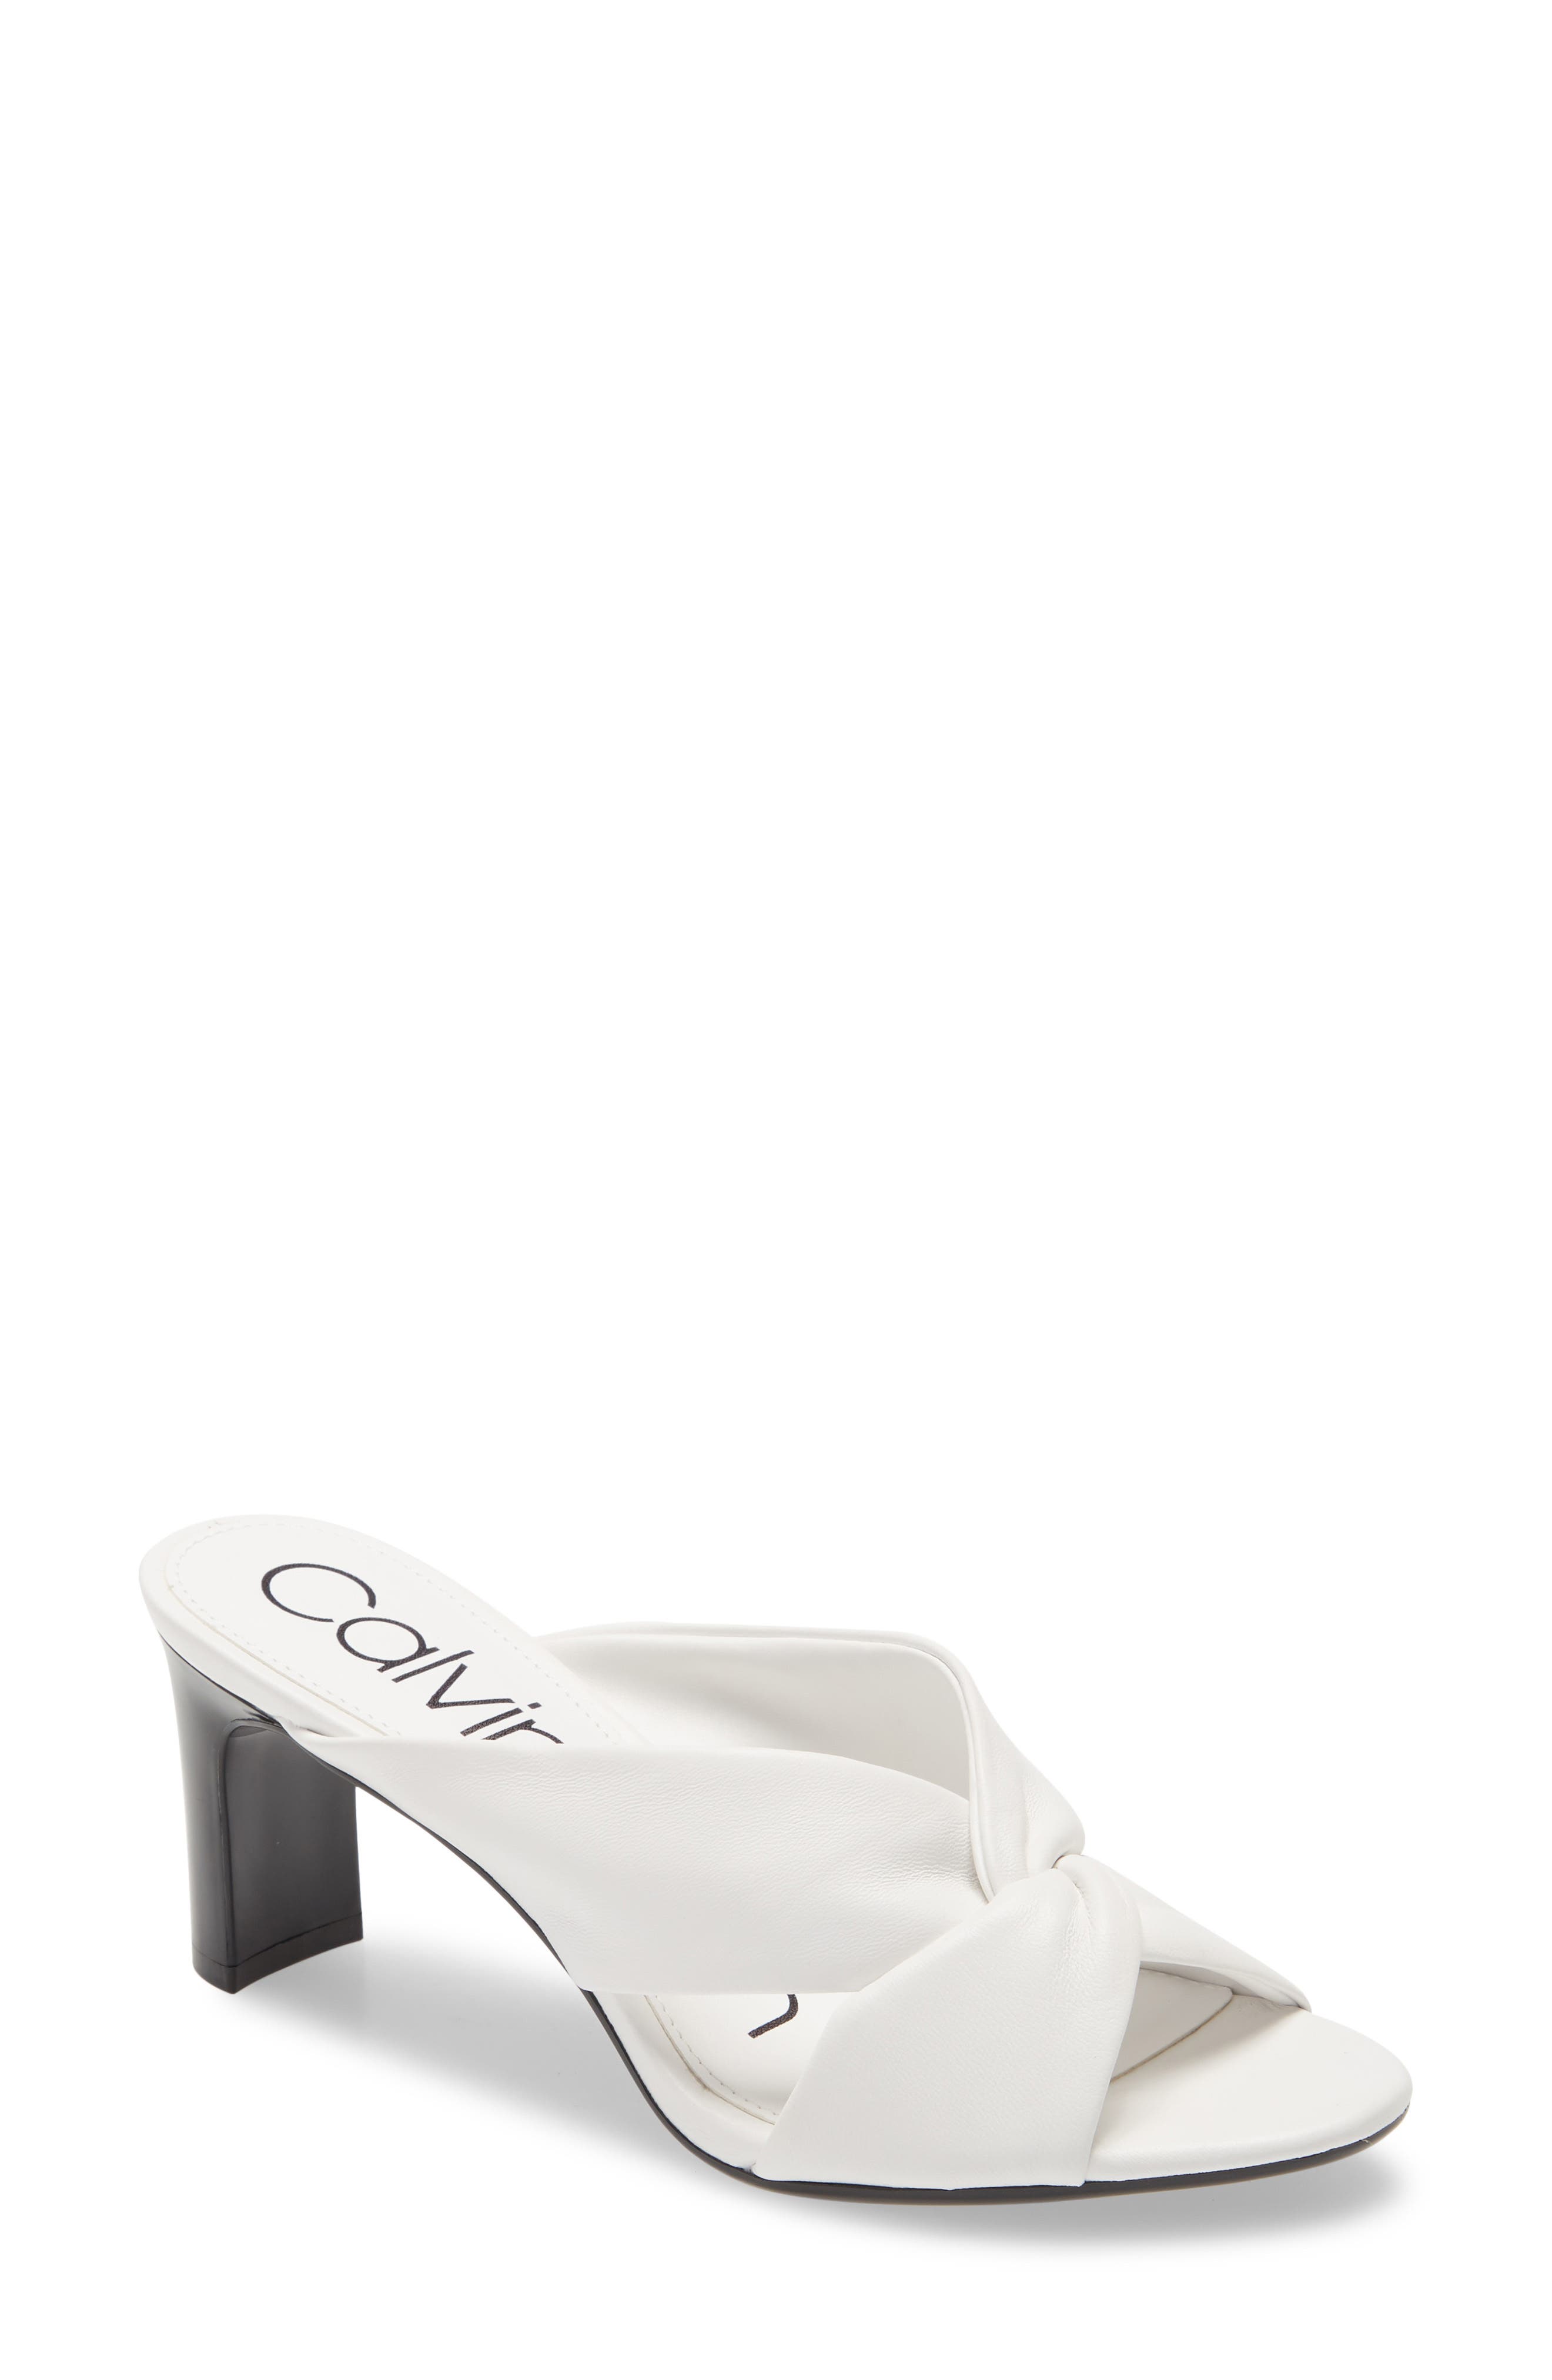 UPC 194060411248 product image for Women's Calvin Klein Omarion Sandal, Size 6 M - White | upcitemdb.com